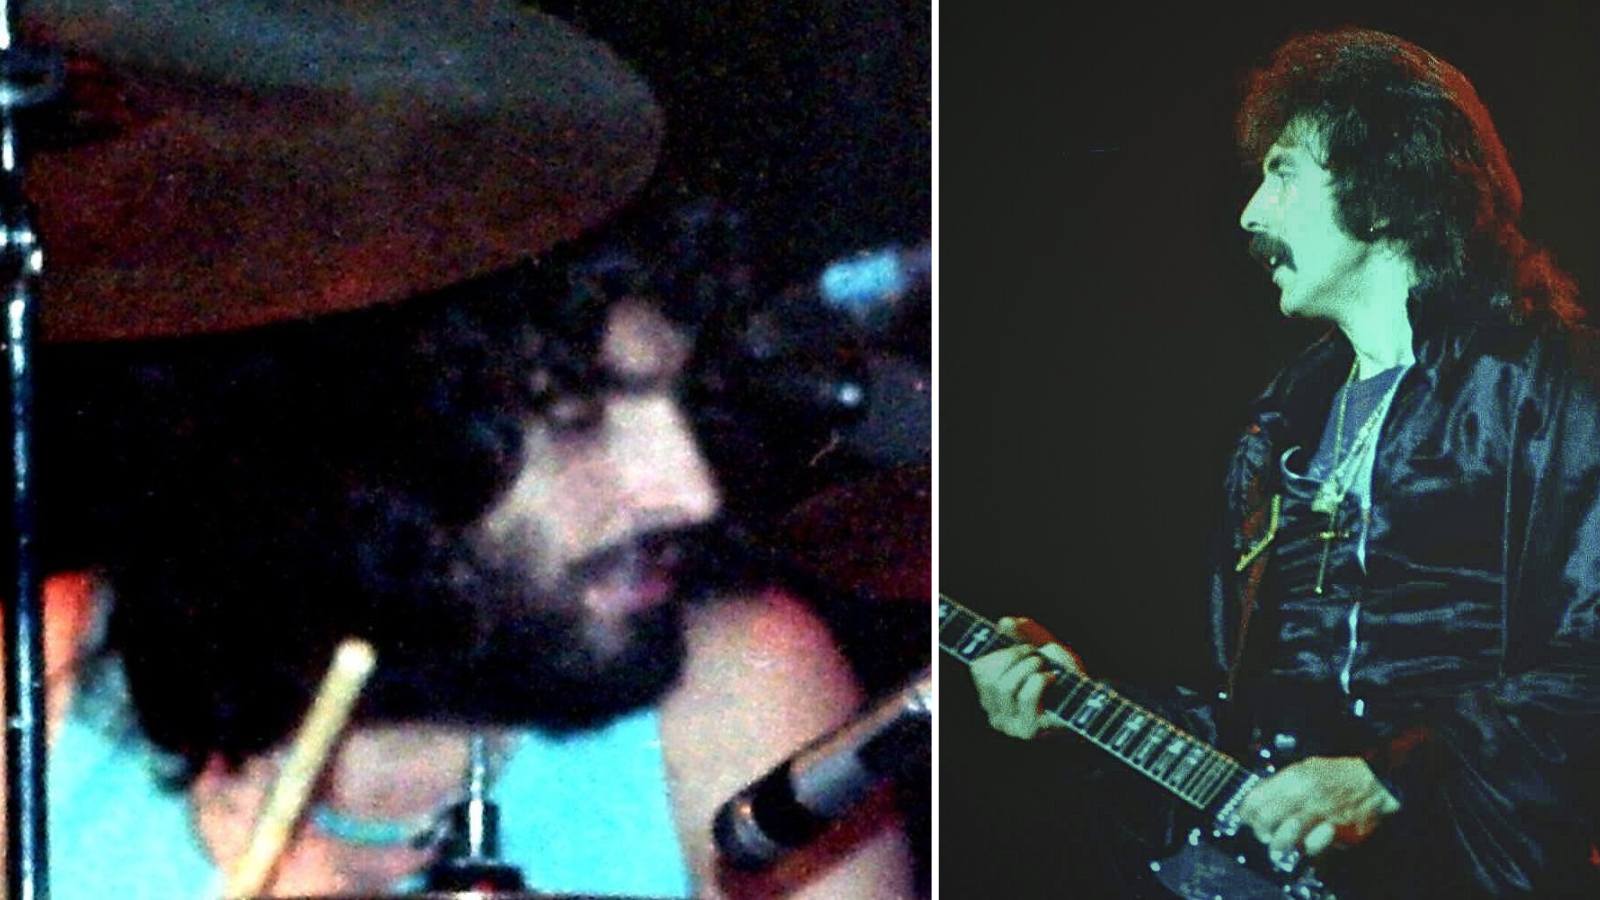 Le batteur se souvient d'avoir rejeté Black Sabbath parce que "ce n'était pas un bon concert", explique pourquoi il a été viré du groupe d'Ozzy